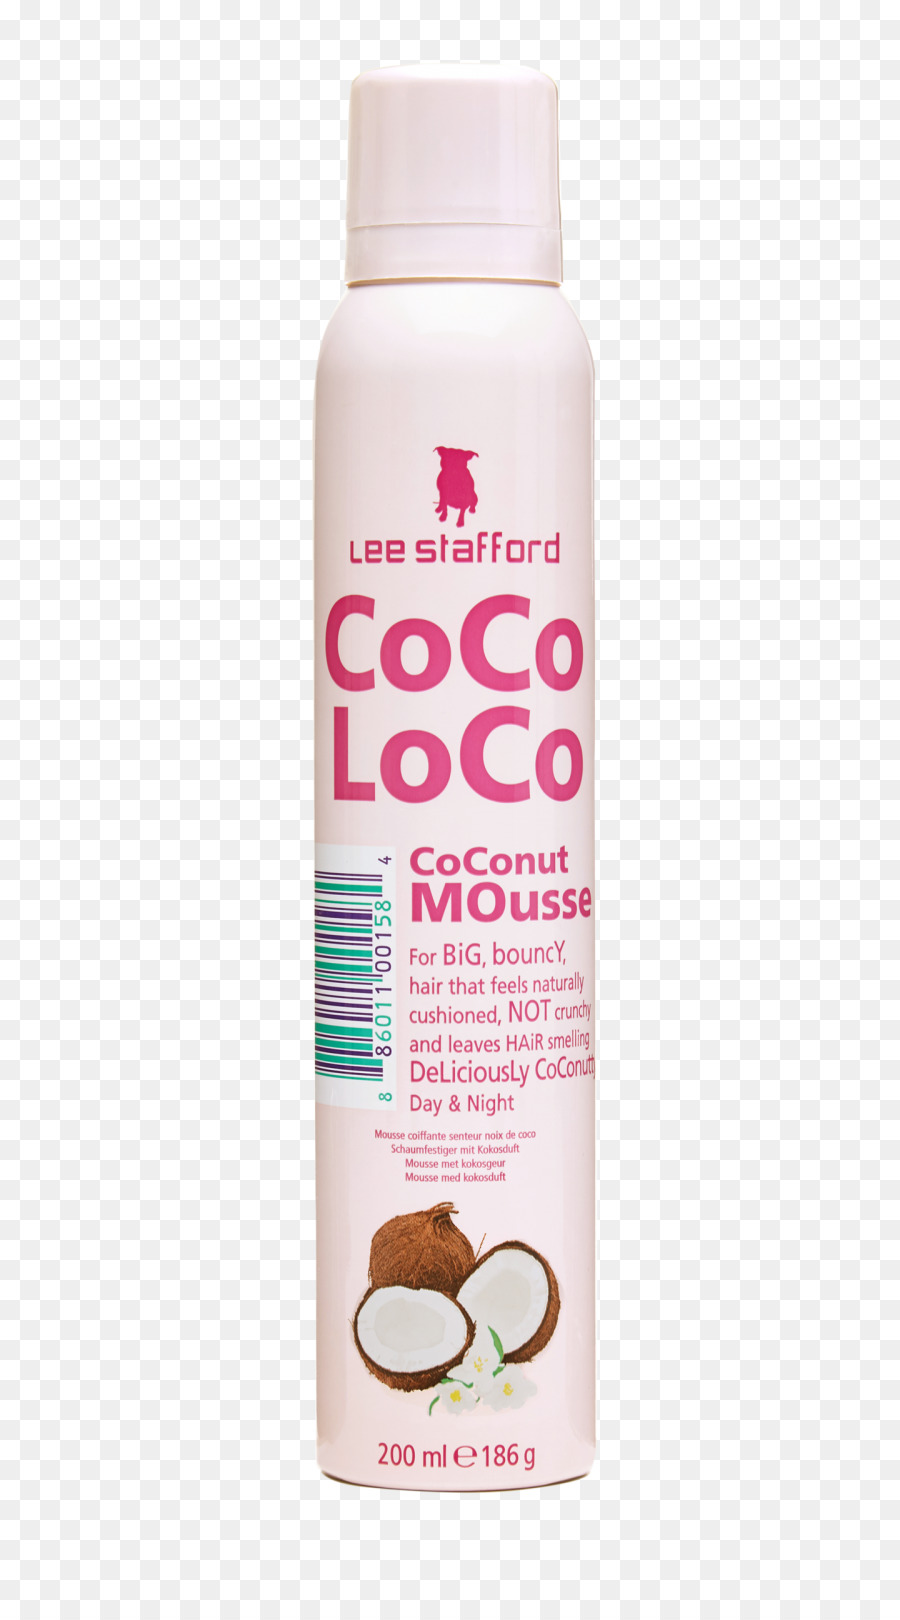 Lozione Lee Stafford Coco Loco Hair spray Mousse Prodotto - vita coco 16 9